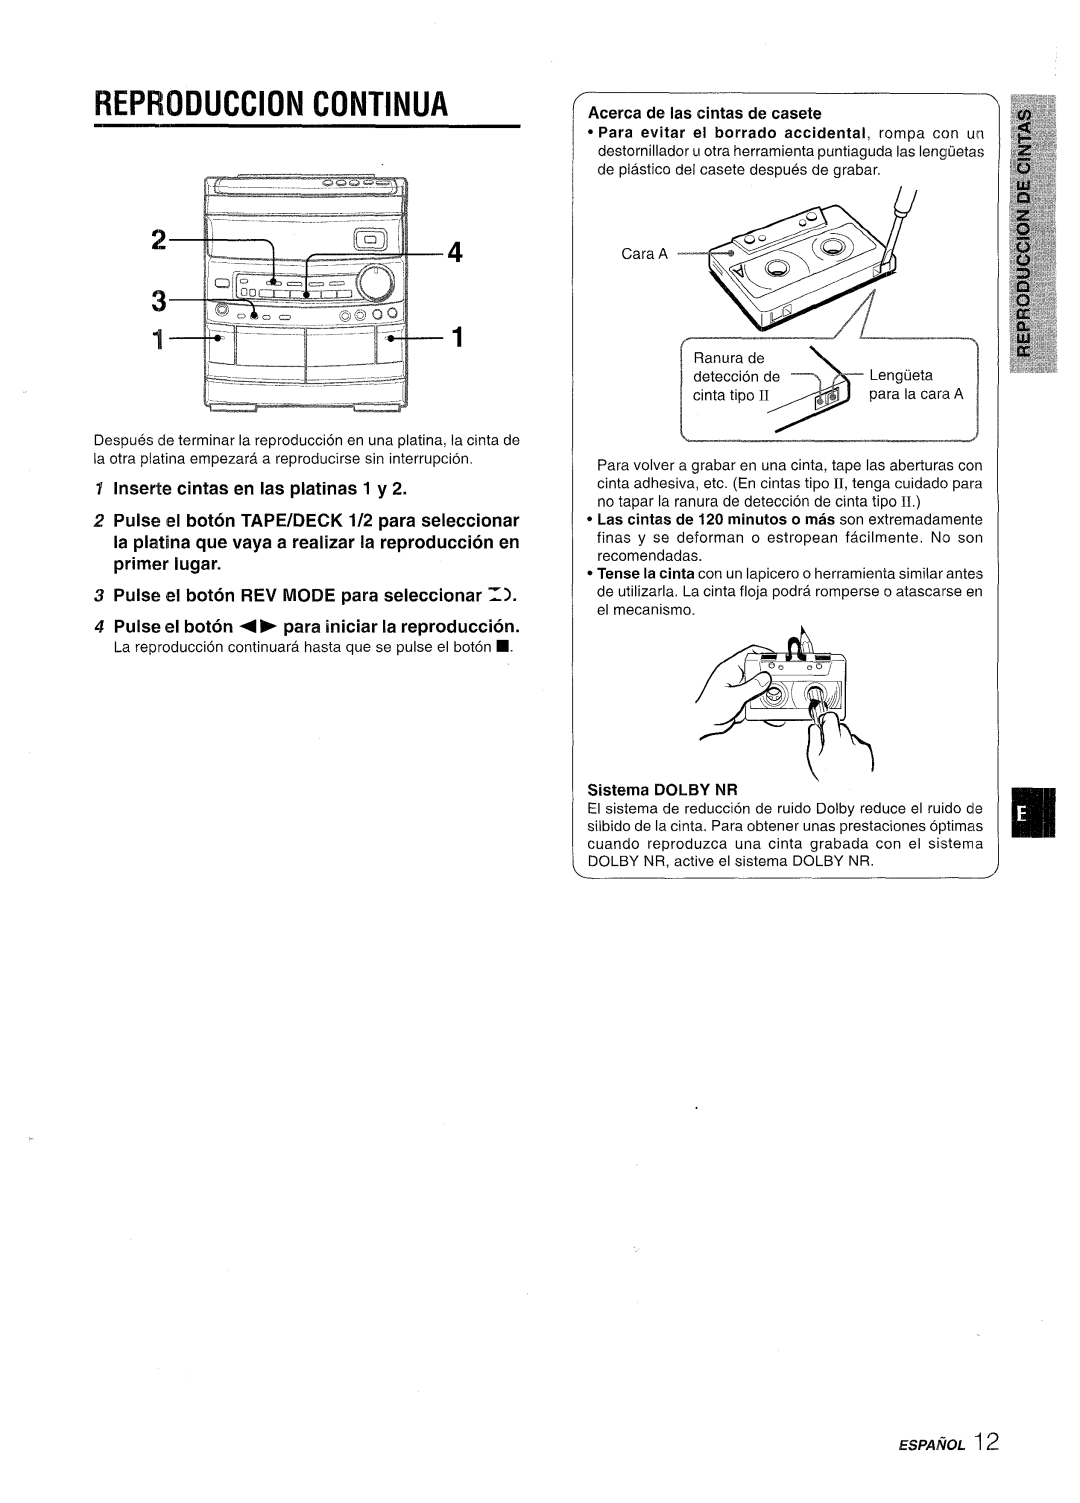 Aiwa CX-NV8000 manual Reiwiduccion Continua, Inserte cintasen lasplatinasl y2, Pulse el boton REV MODE para seleccionar = 